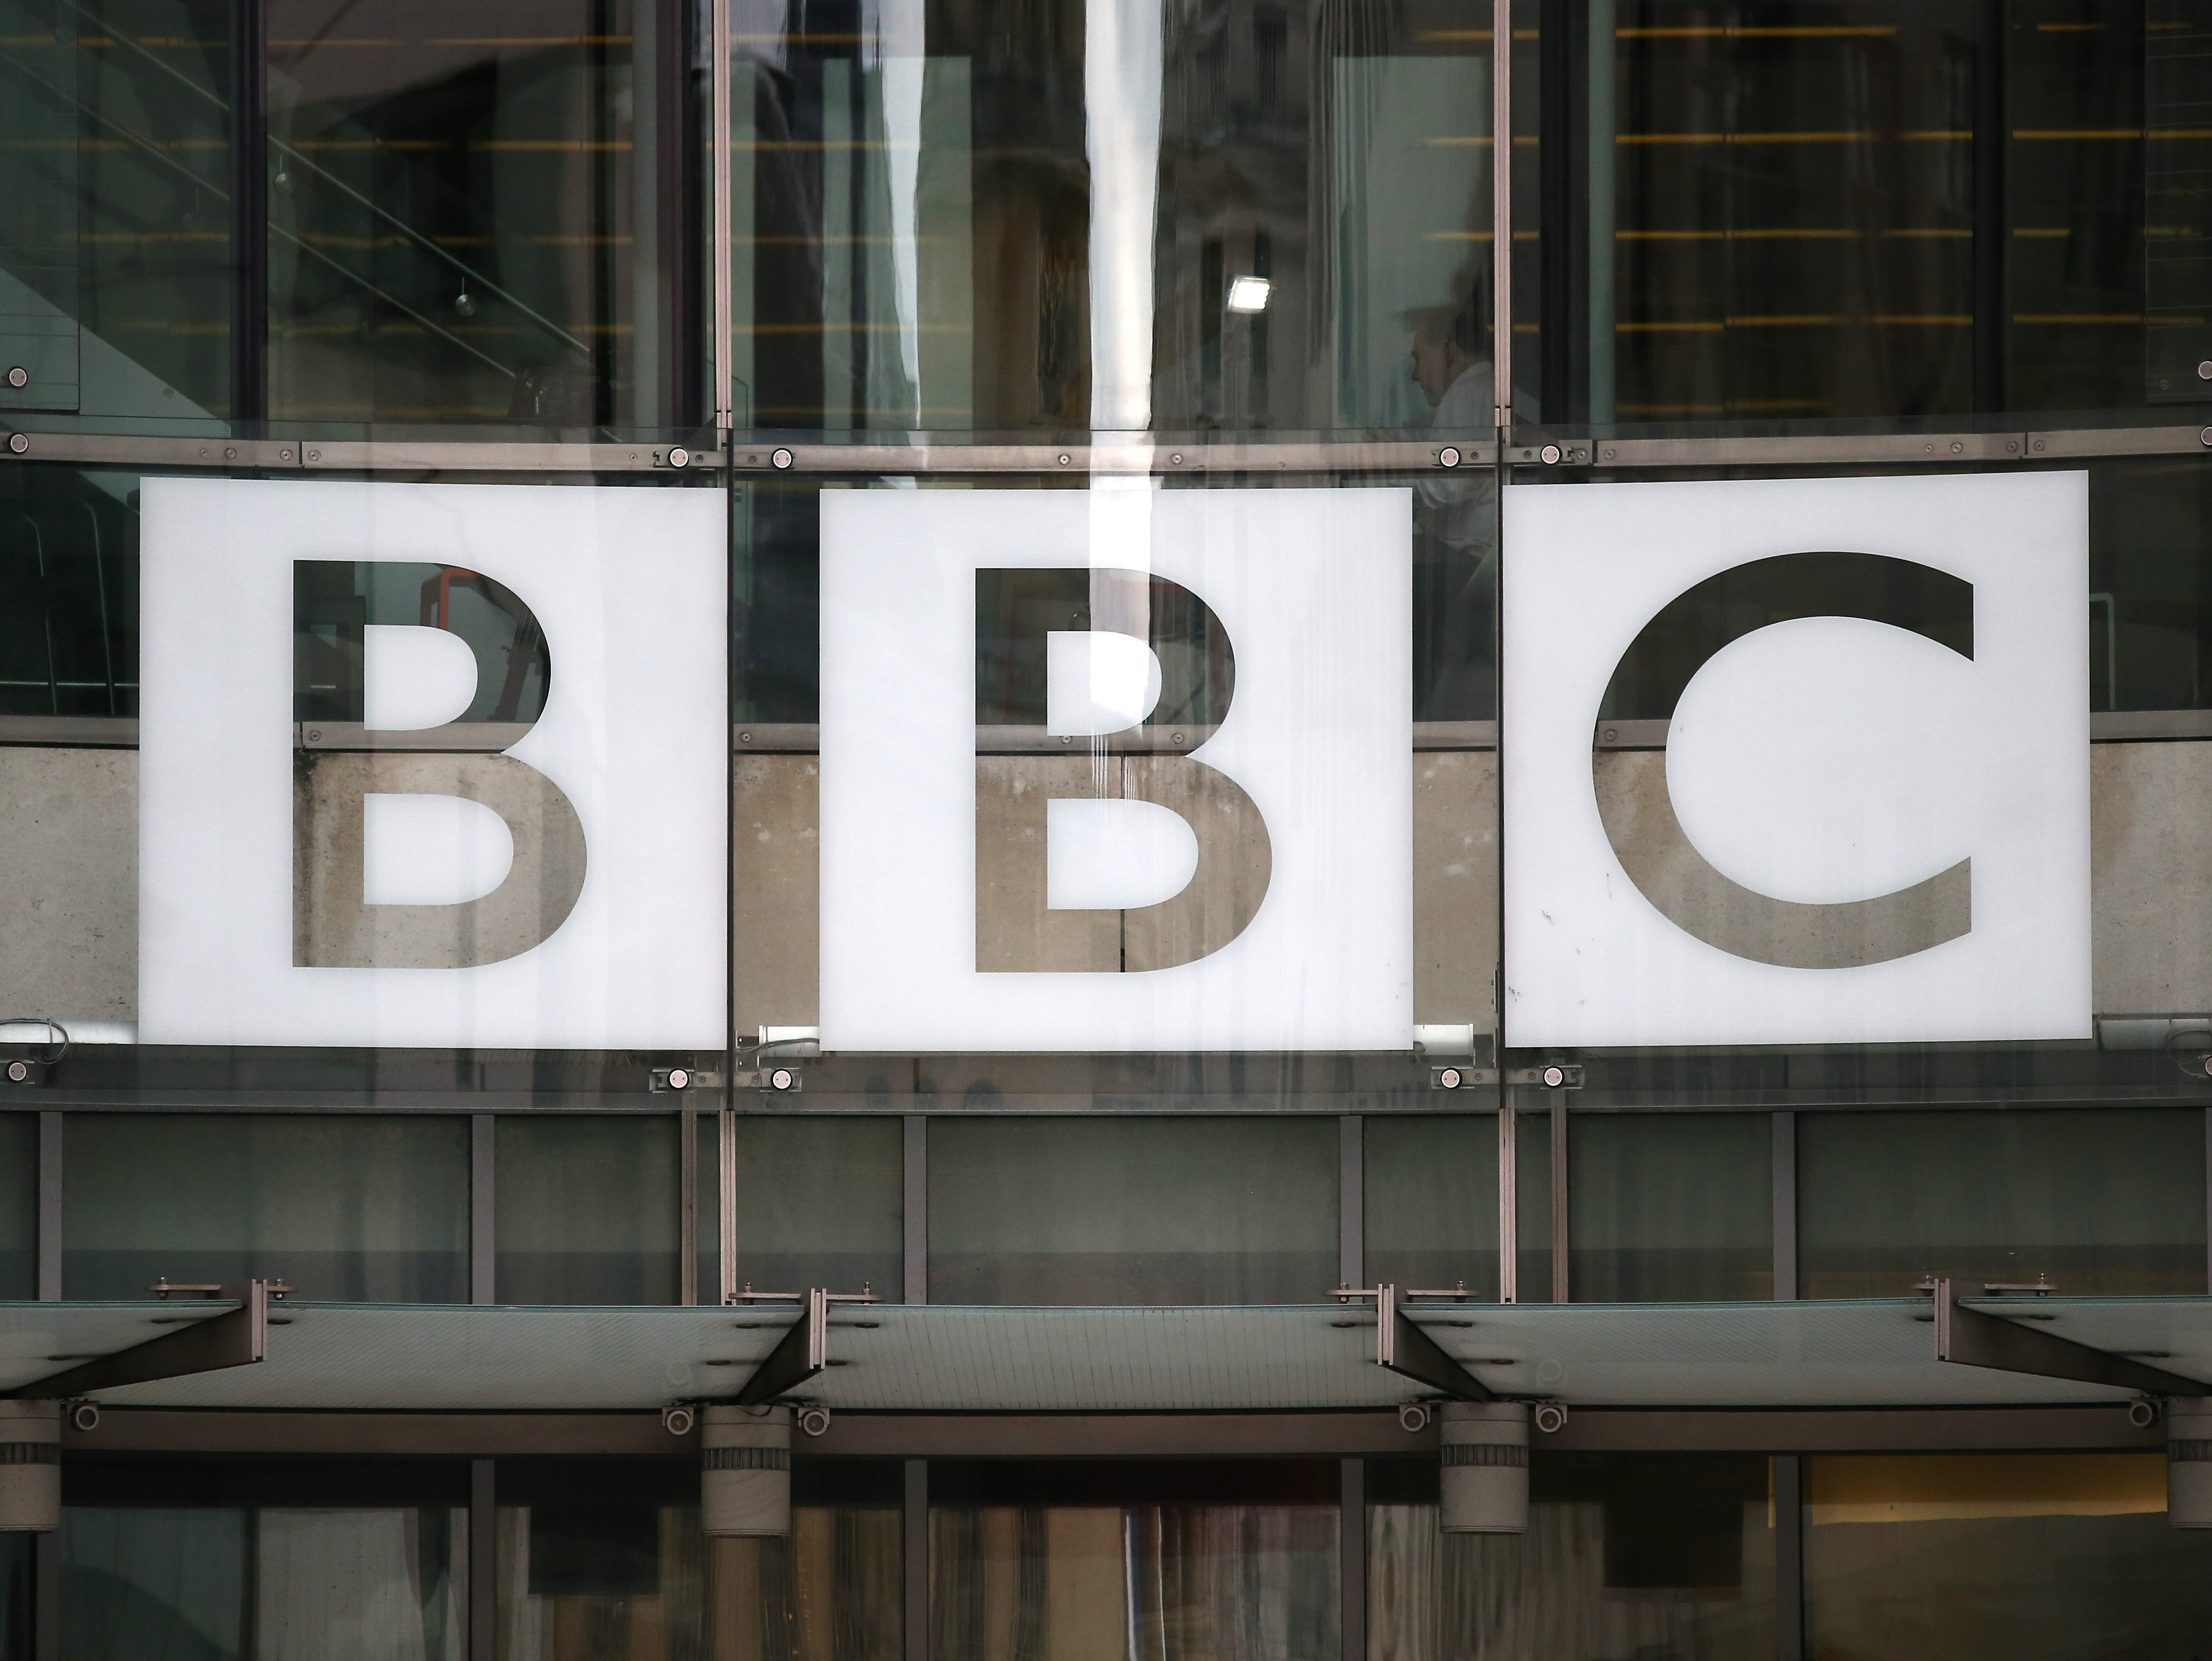 Расследование дела Скрипалей еще даже не закончено, но BBC уже снимает фильм о событиях в Солсбери: сценаристы выдумывают новые подробности